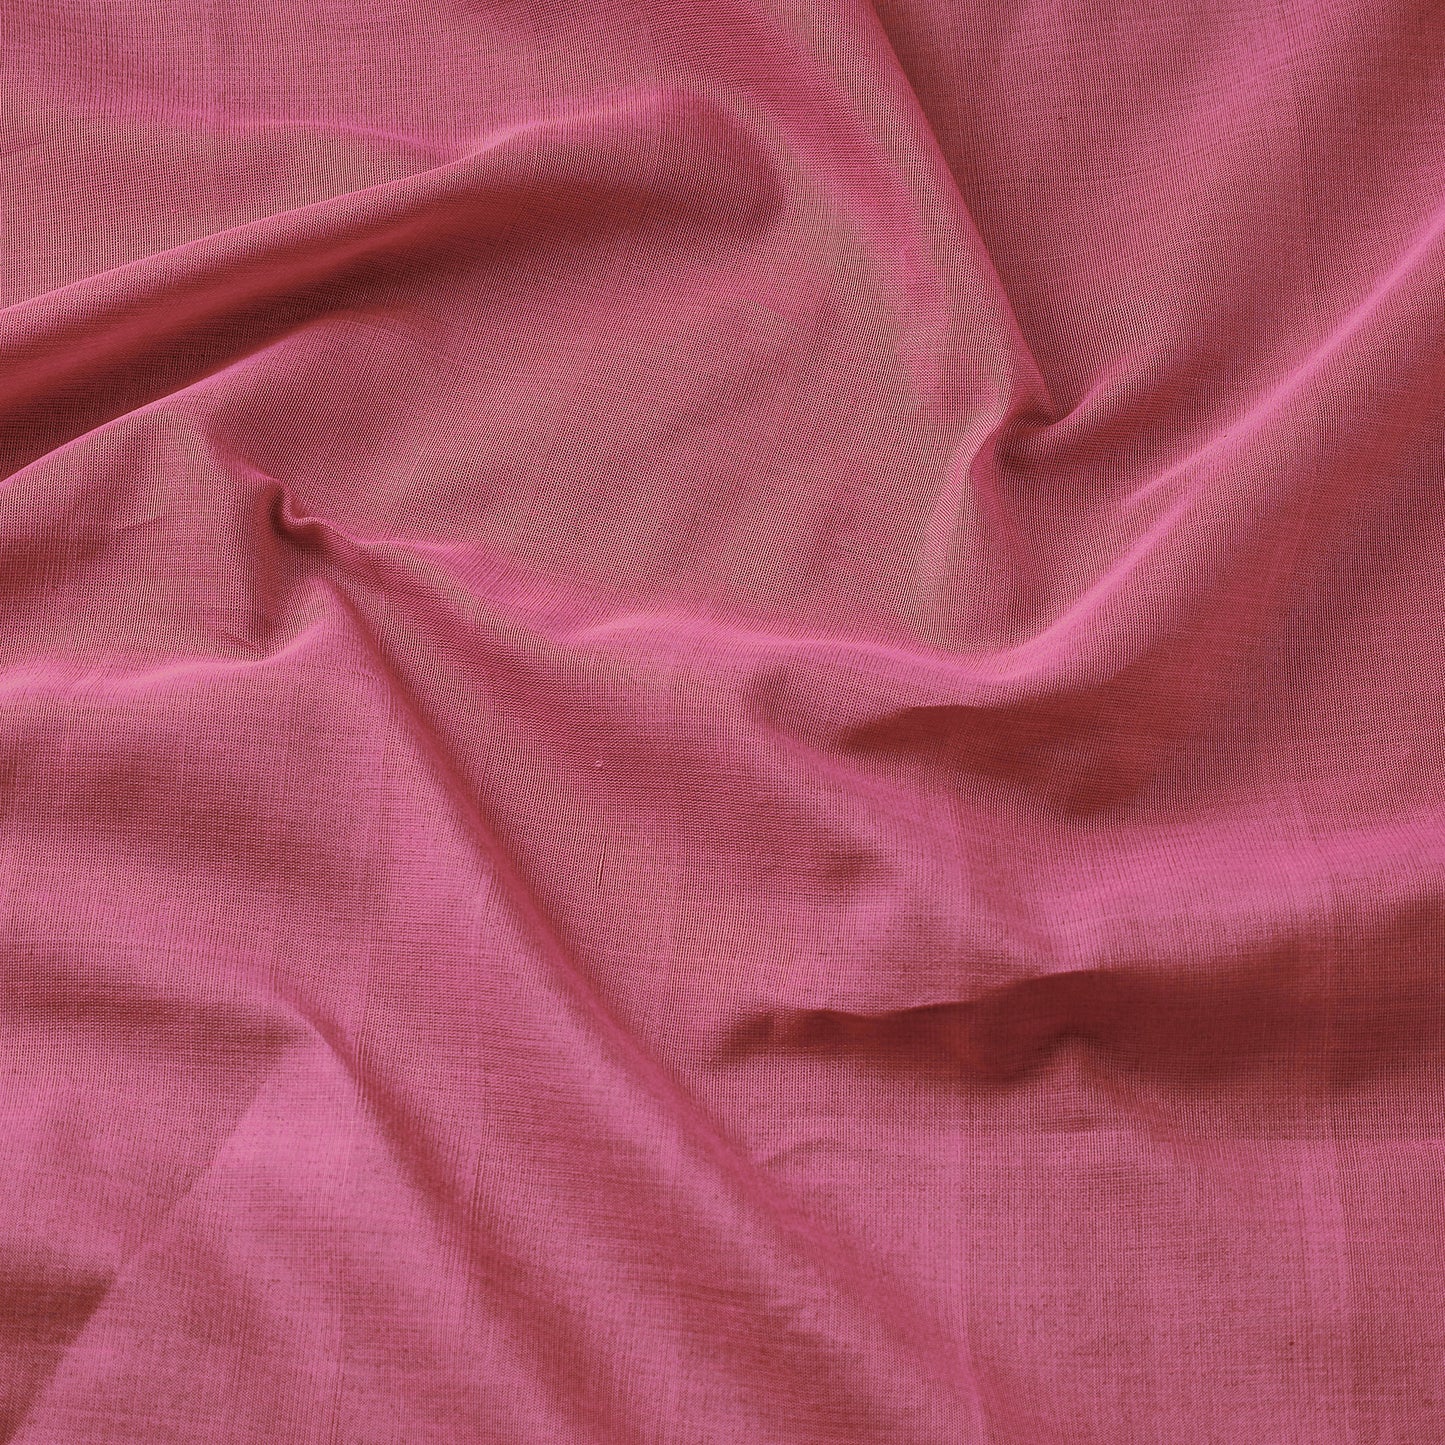 Pink - Maheshwari Cotton Handloom Fabric